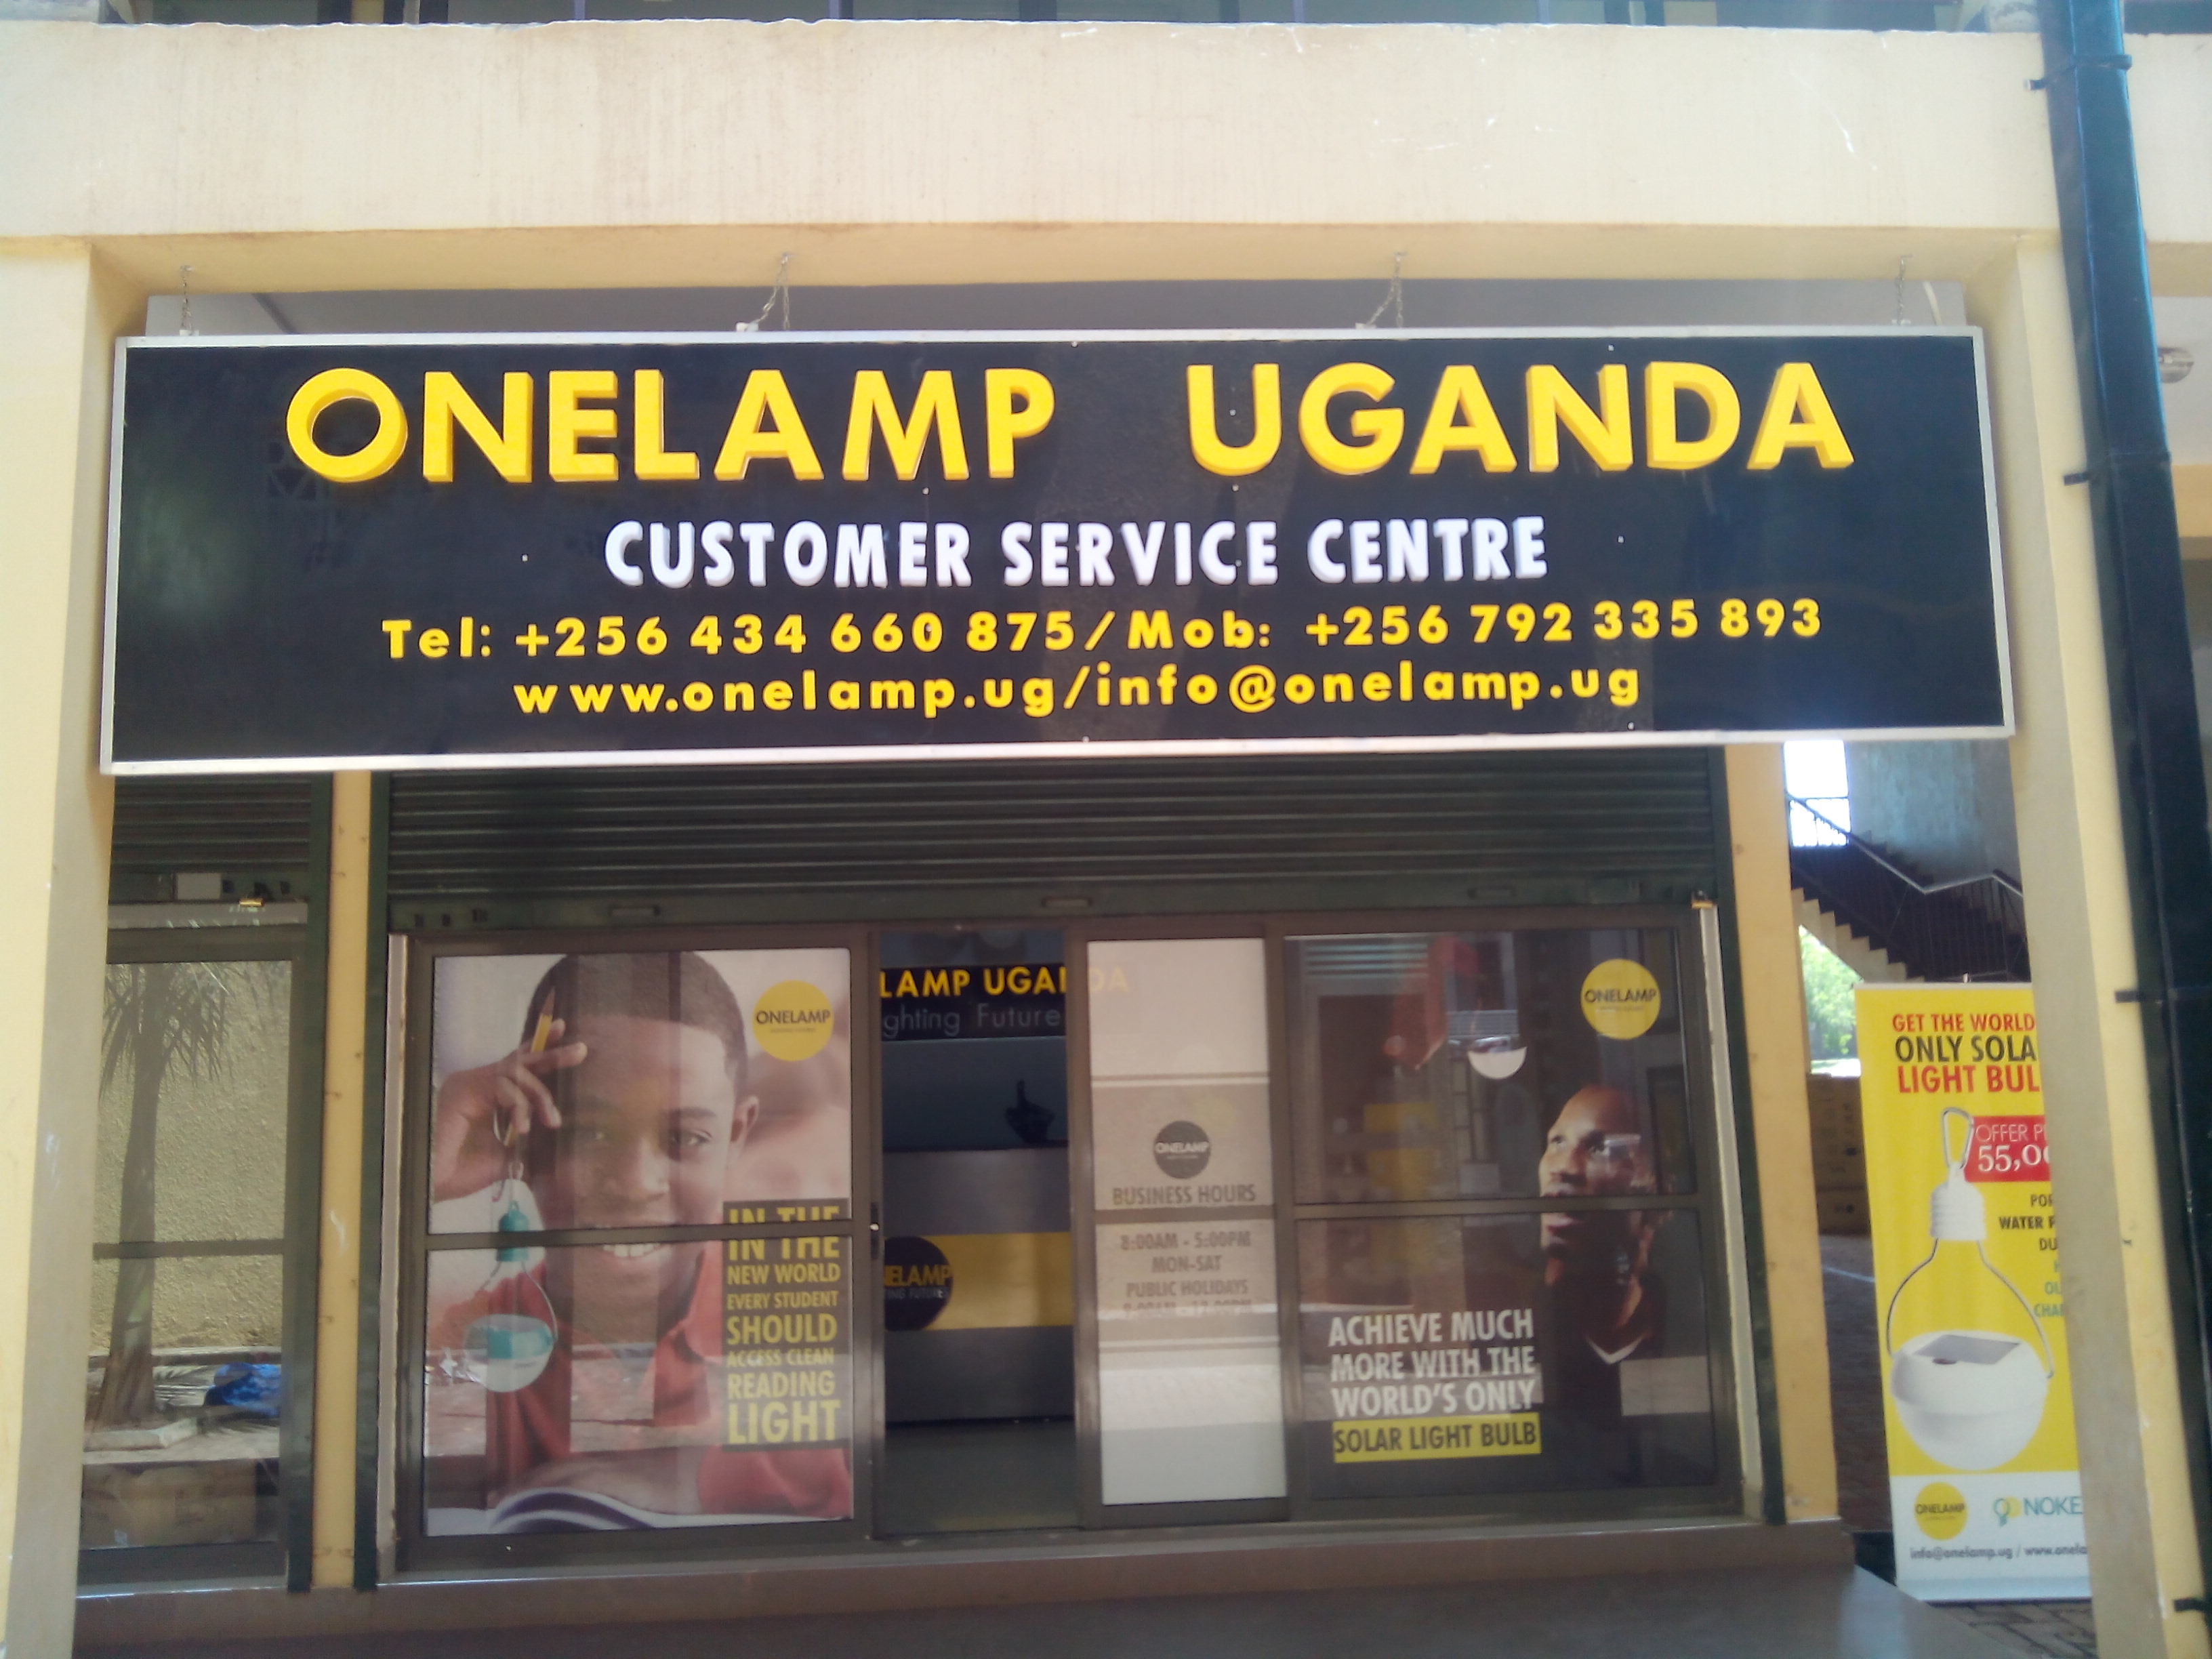 Contact Onelamp Uganda: info@onelamp.ug or +256434660875